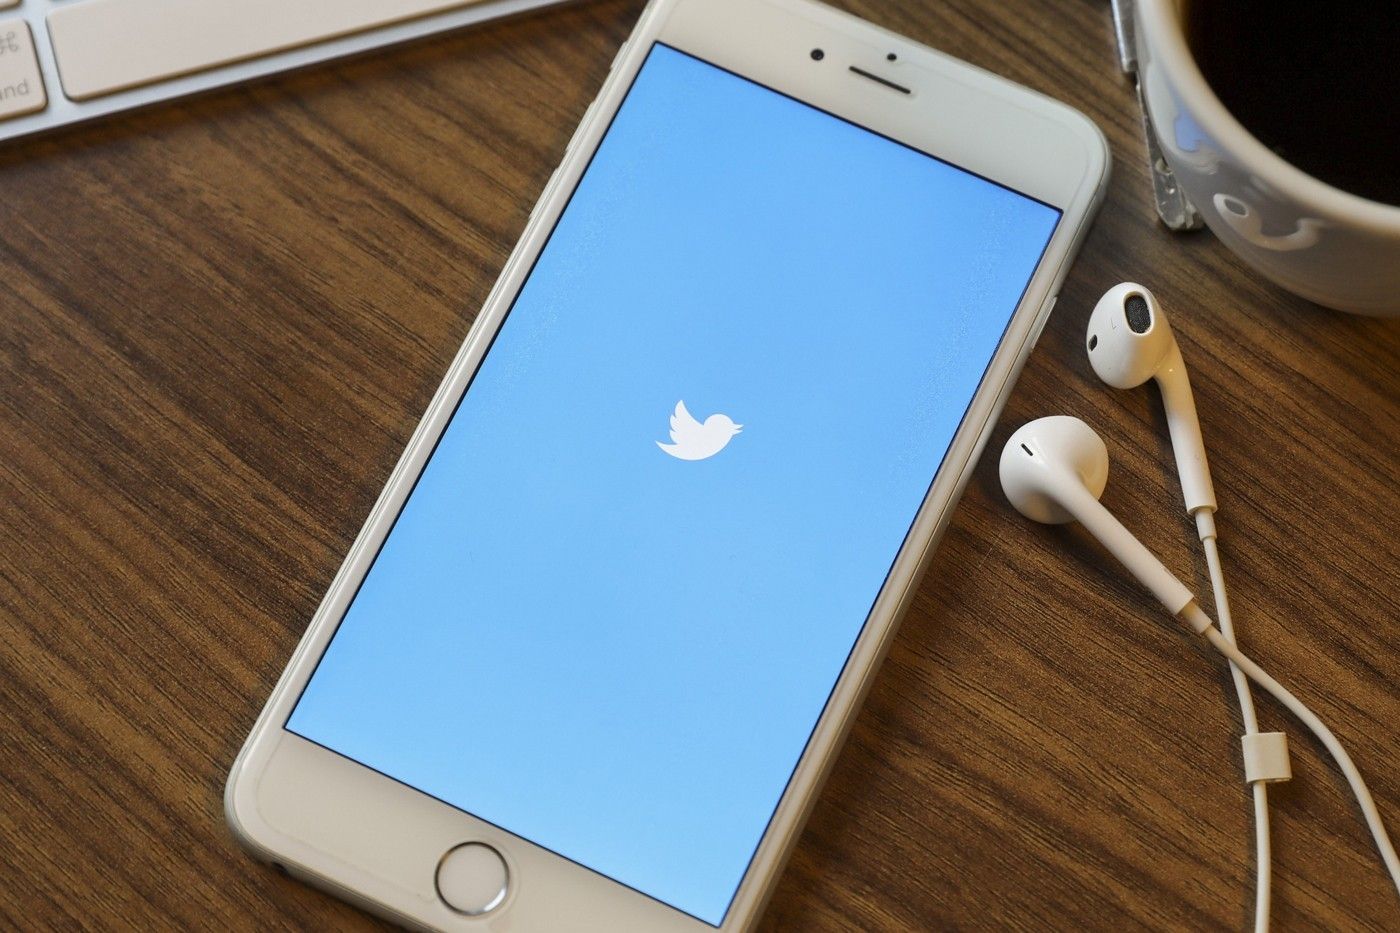 Los tweets de audio ya están disponibles en dispositivos iOS